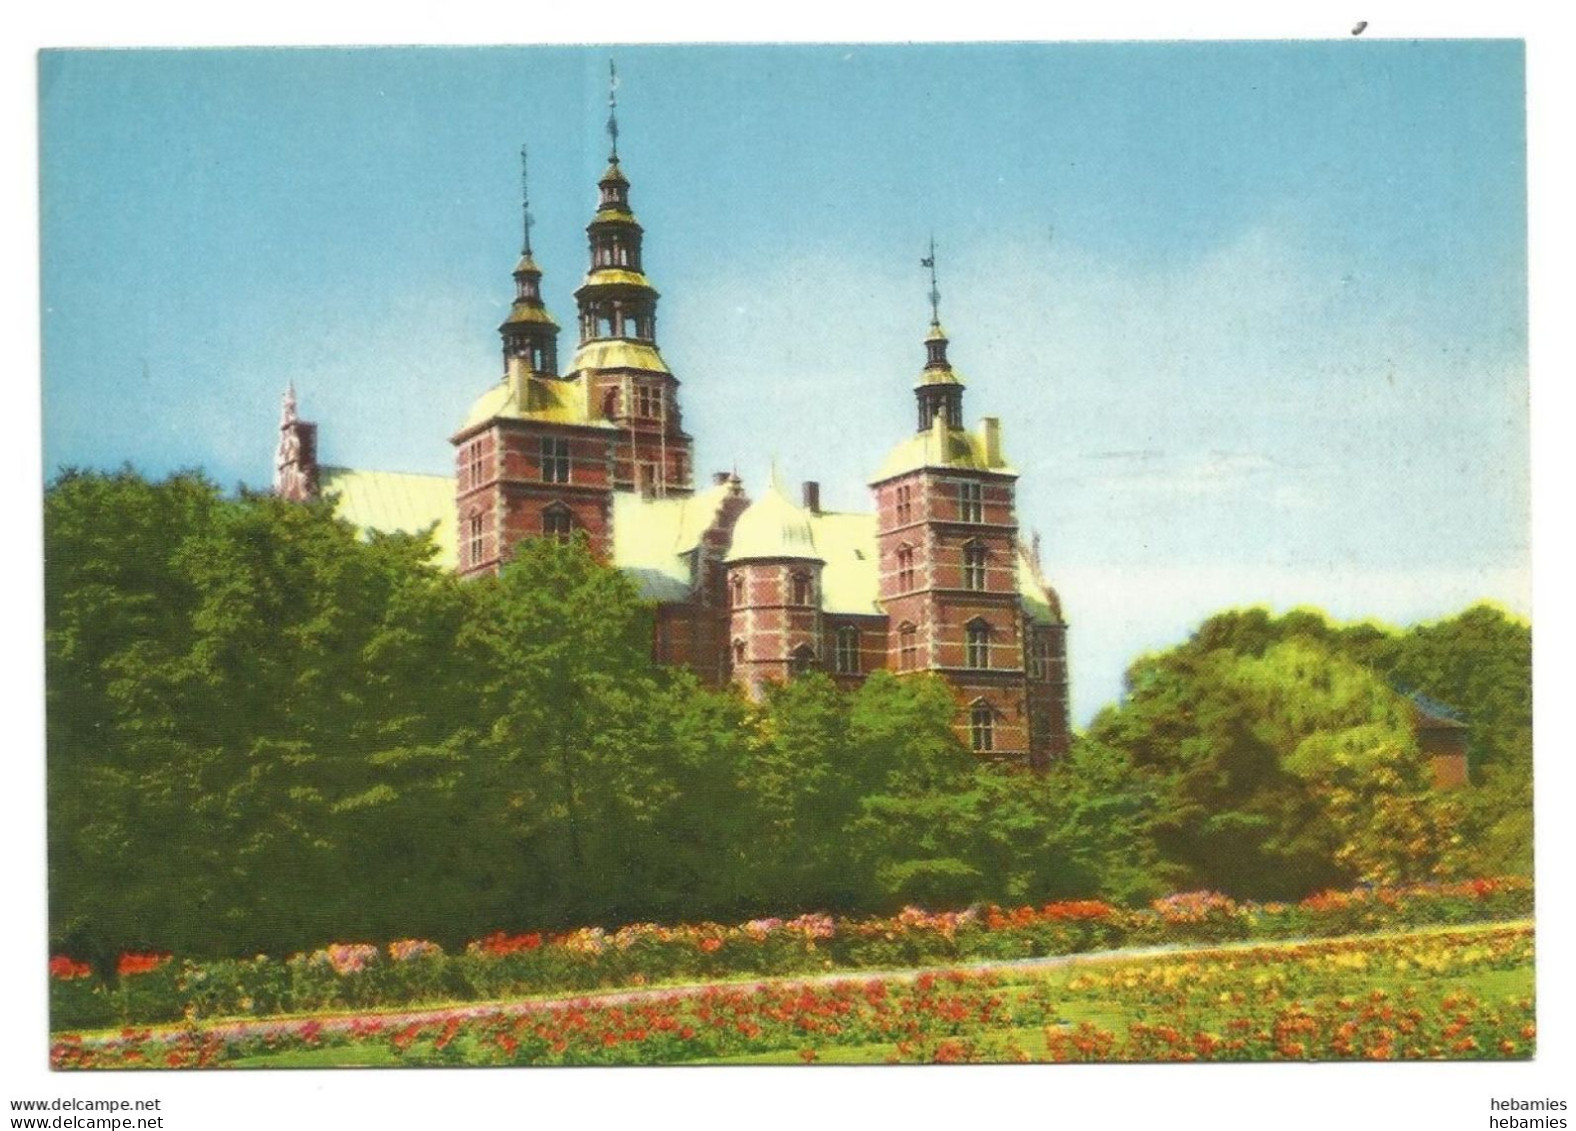 ROSENBORG CASTLE - COPENHAGEN - DENMARK - - Castles